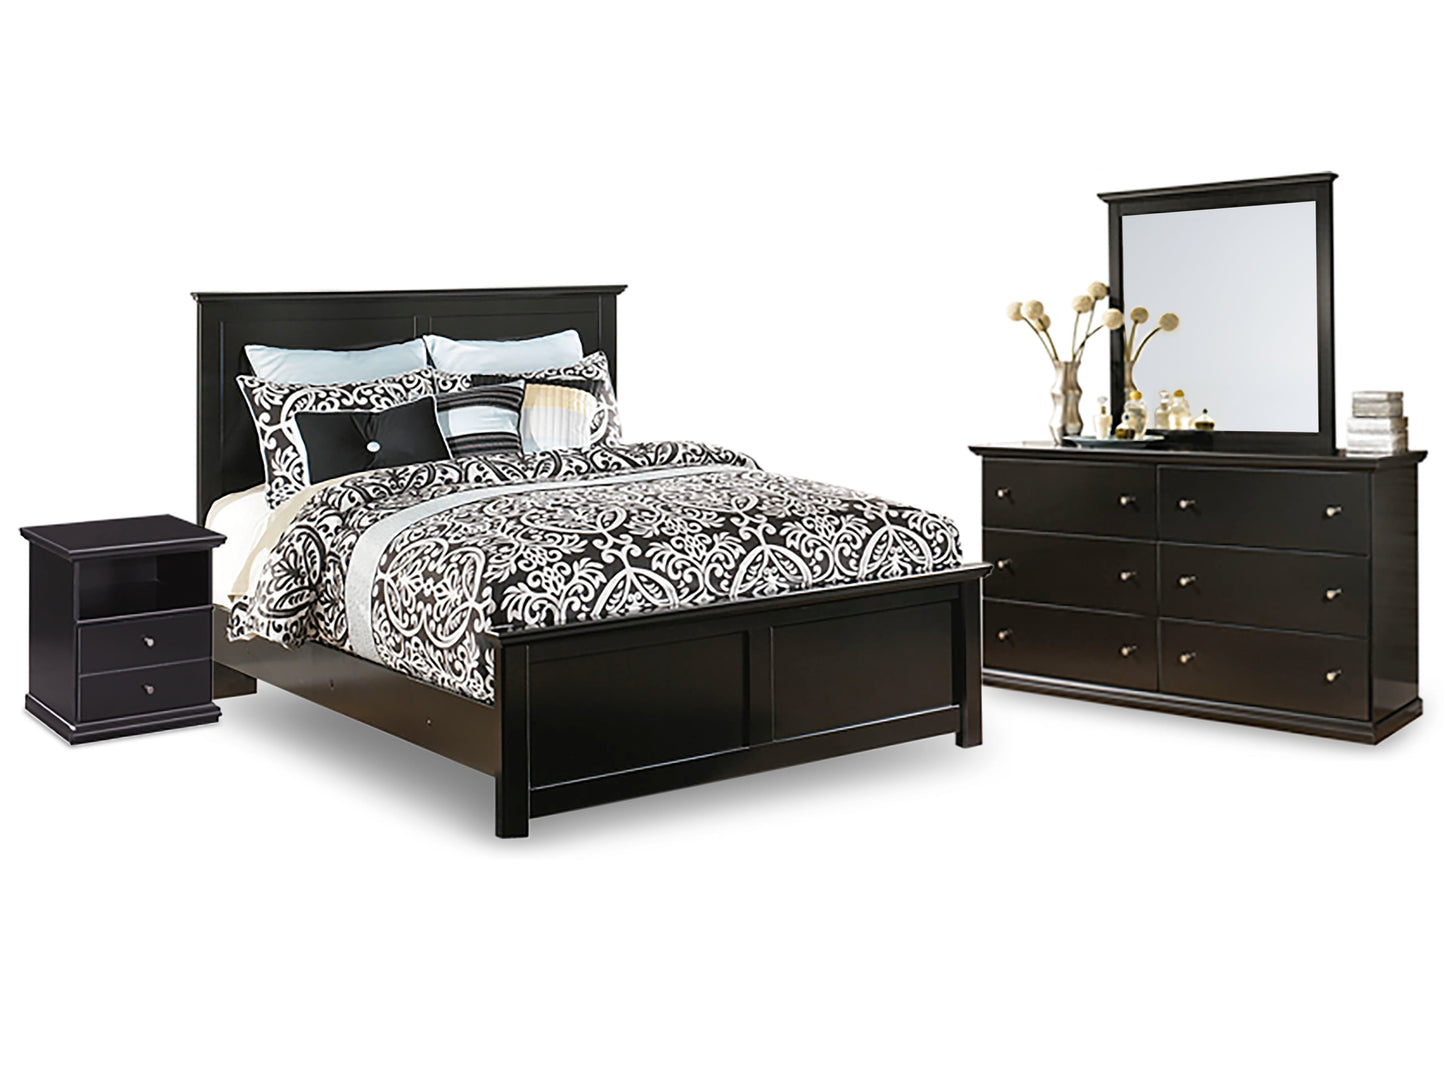 Maribel Black Queen Panel Bedroom Set with Dresser, Mirror and Nightstand